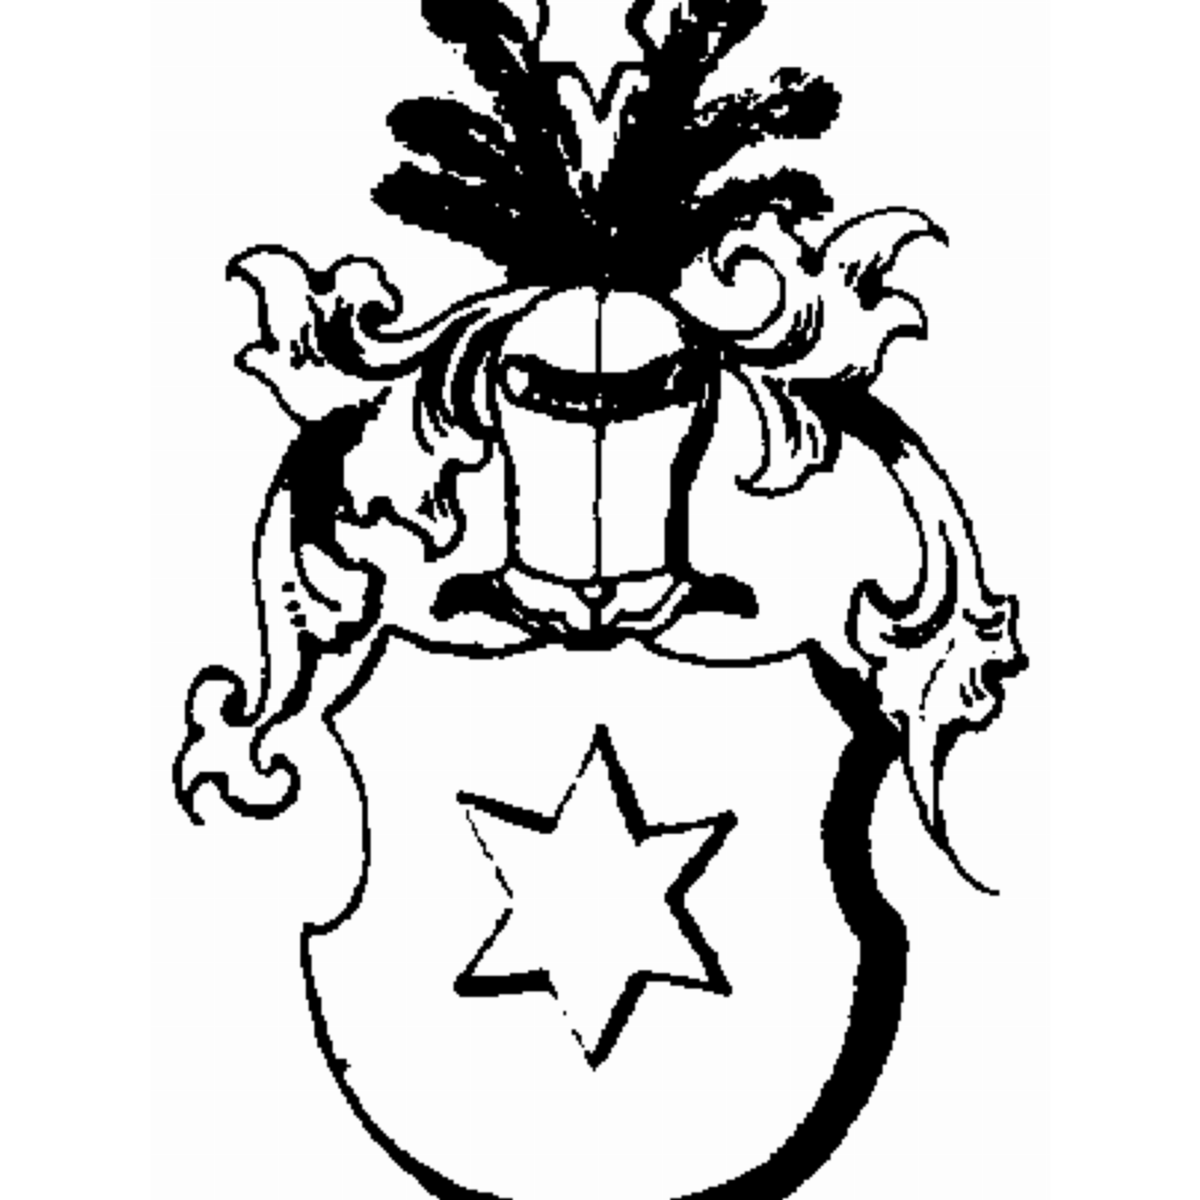 Wappen der Familie Zenetti